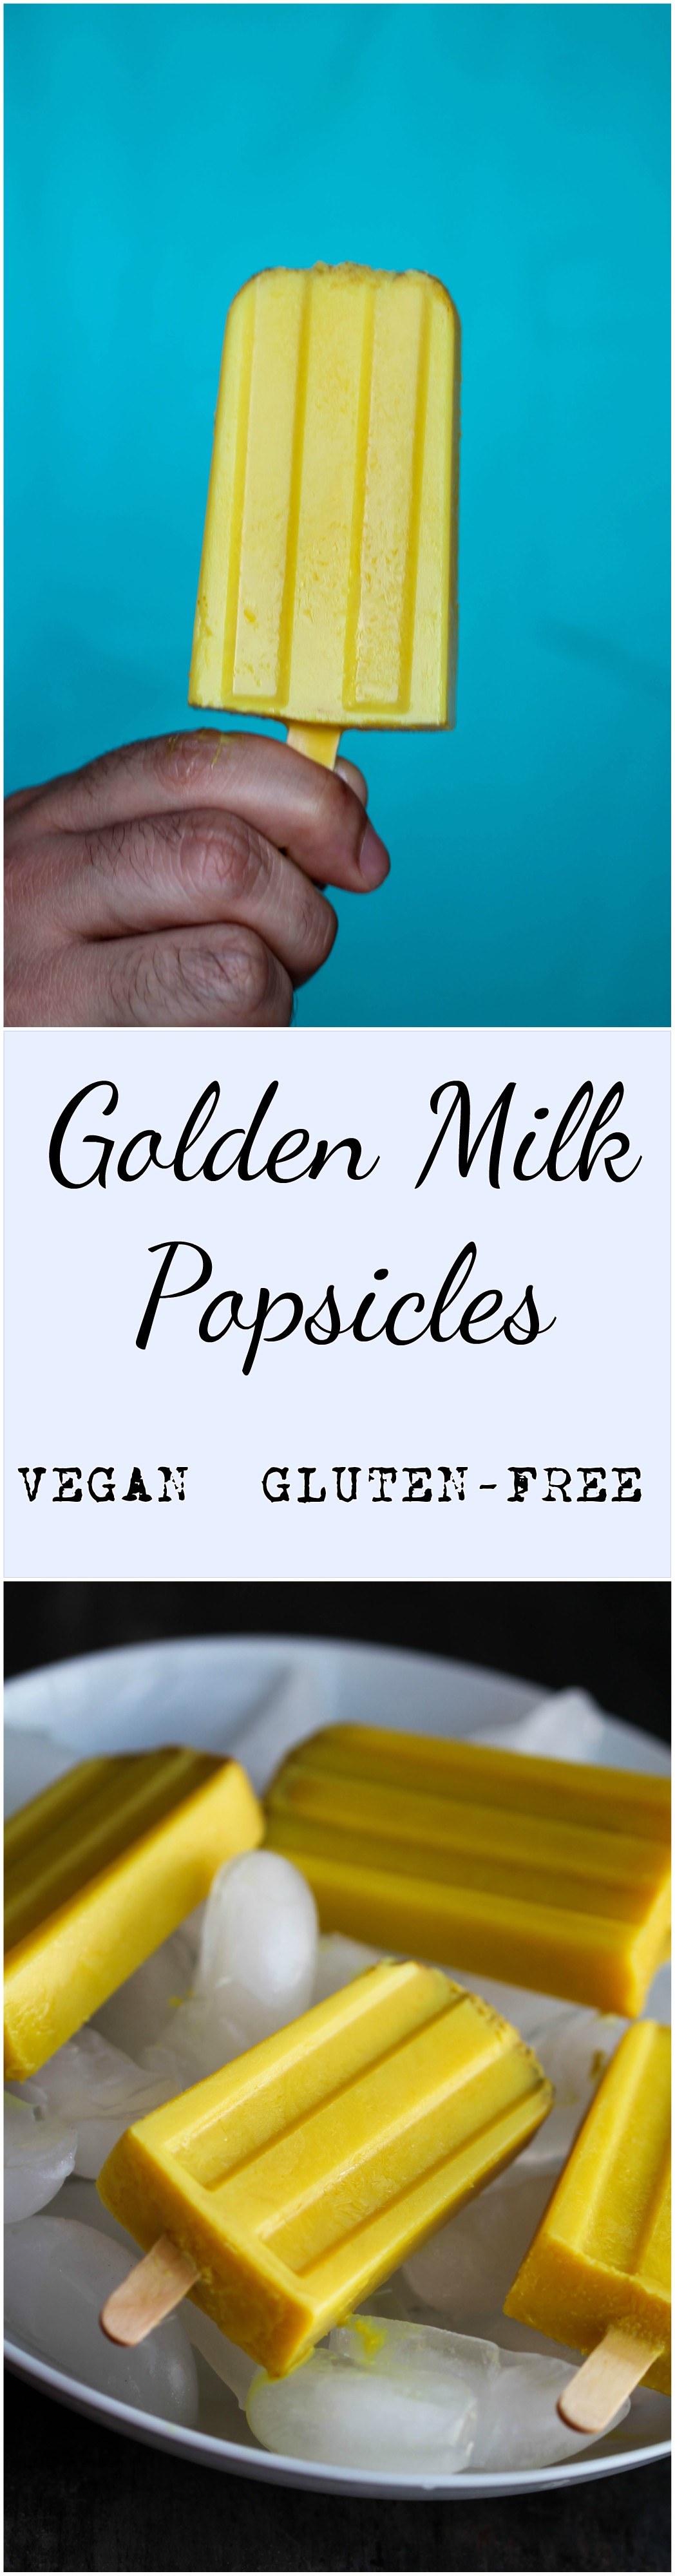 Golden Milk Popsicles